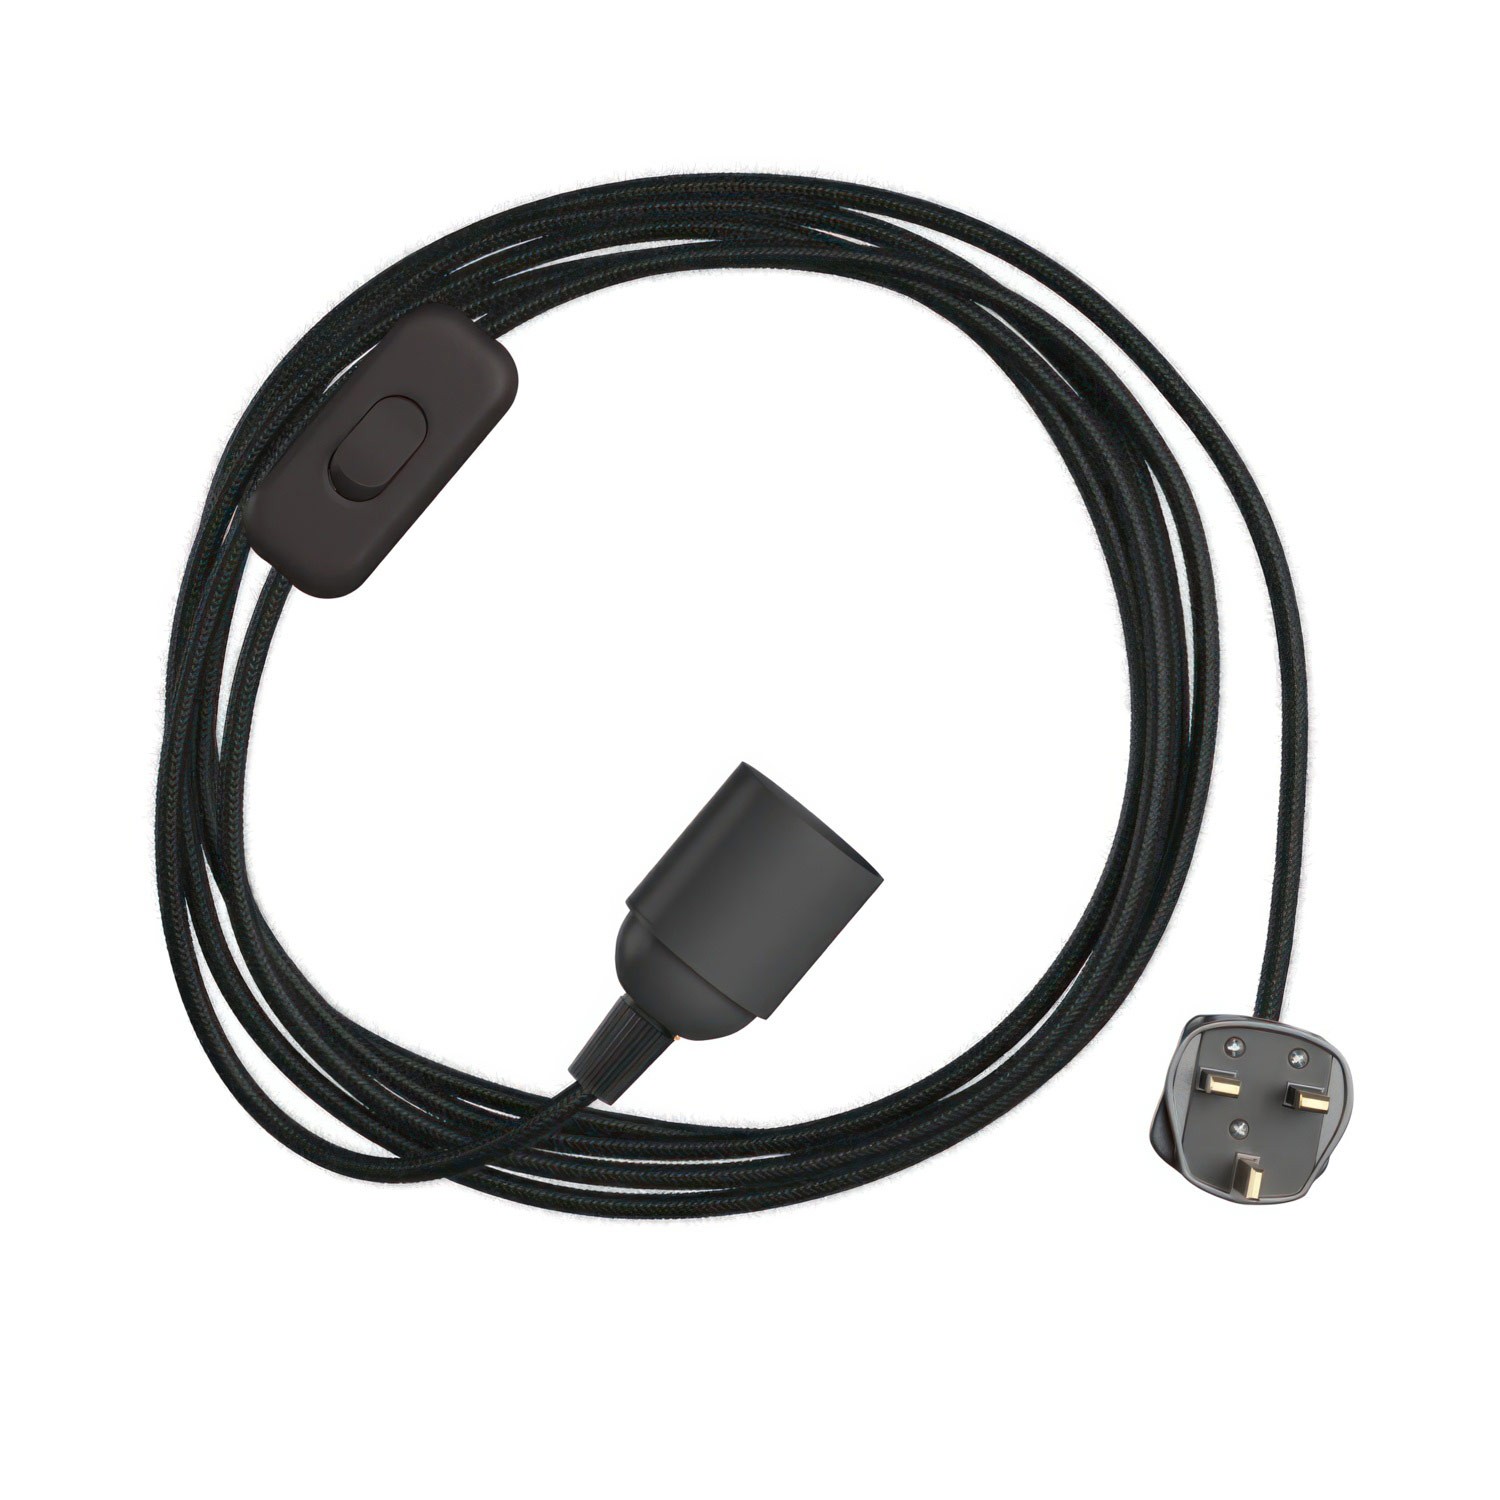 SnakeBis - Juego de cables con portalámparas, cable textil de color y enchufe británico